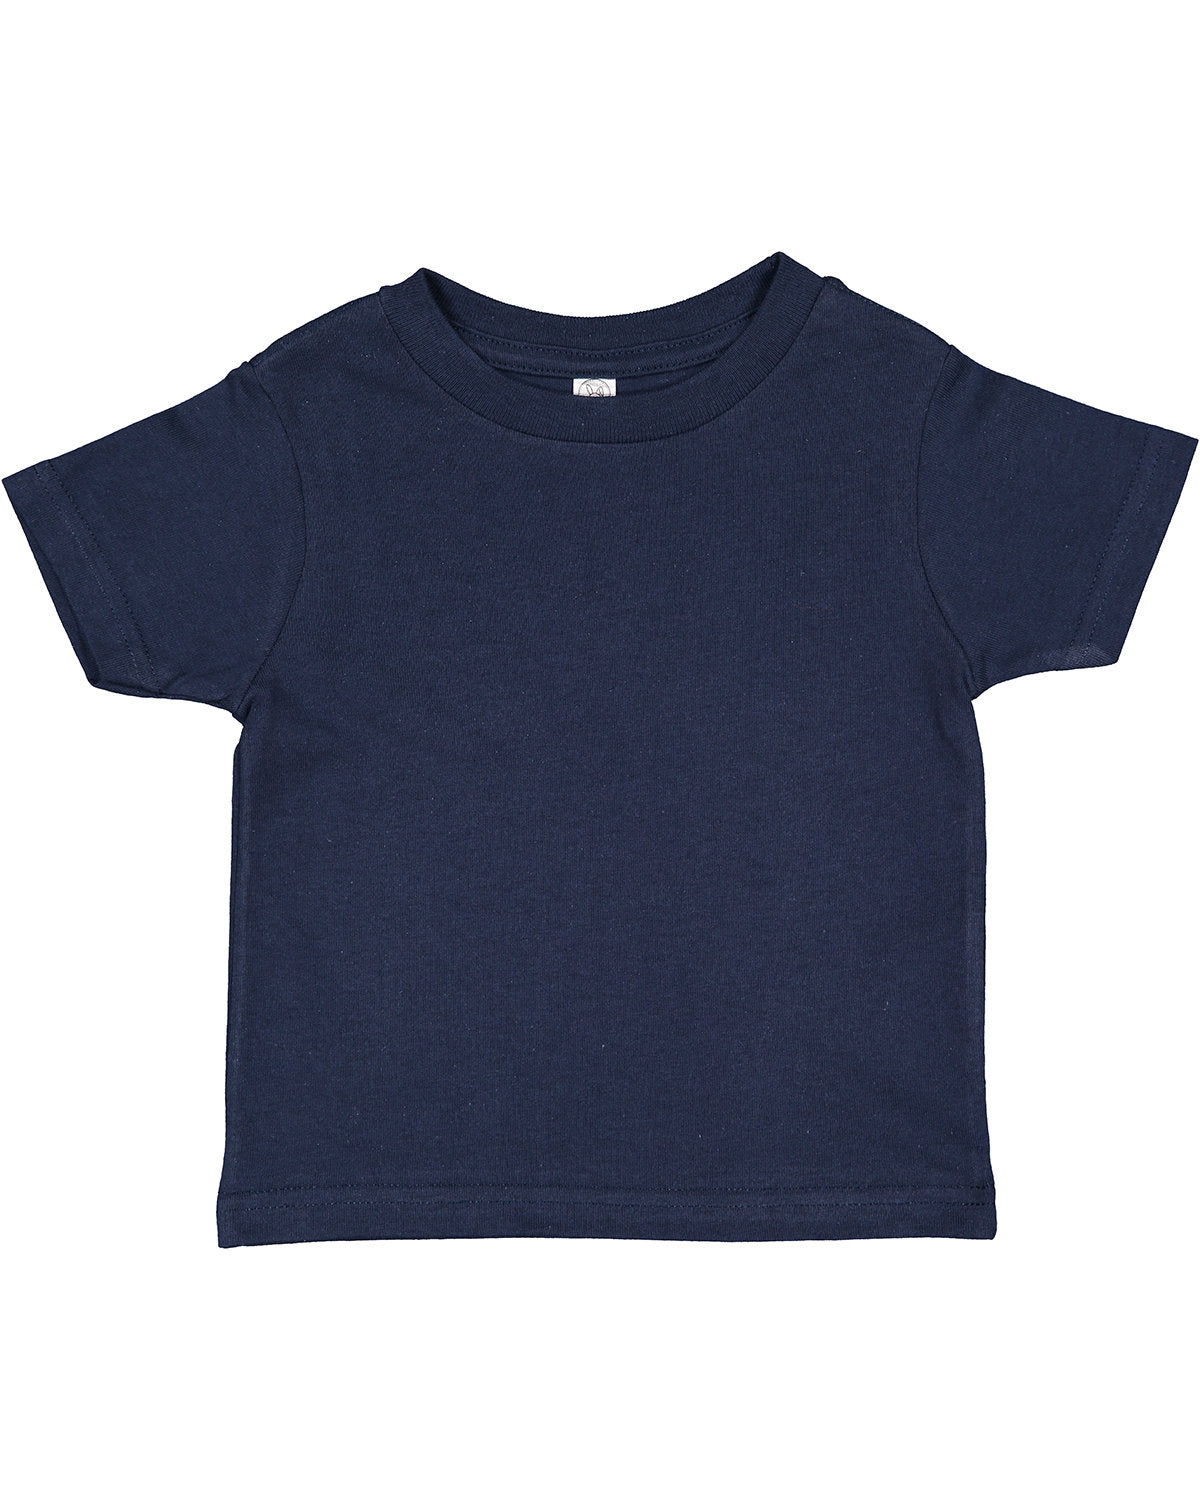 Rabbit Skins Toddler Cotton Jersey T-Shirt 2T / Navy